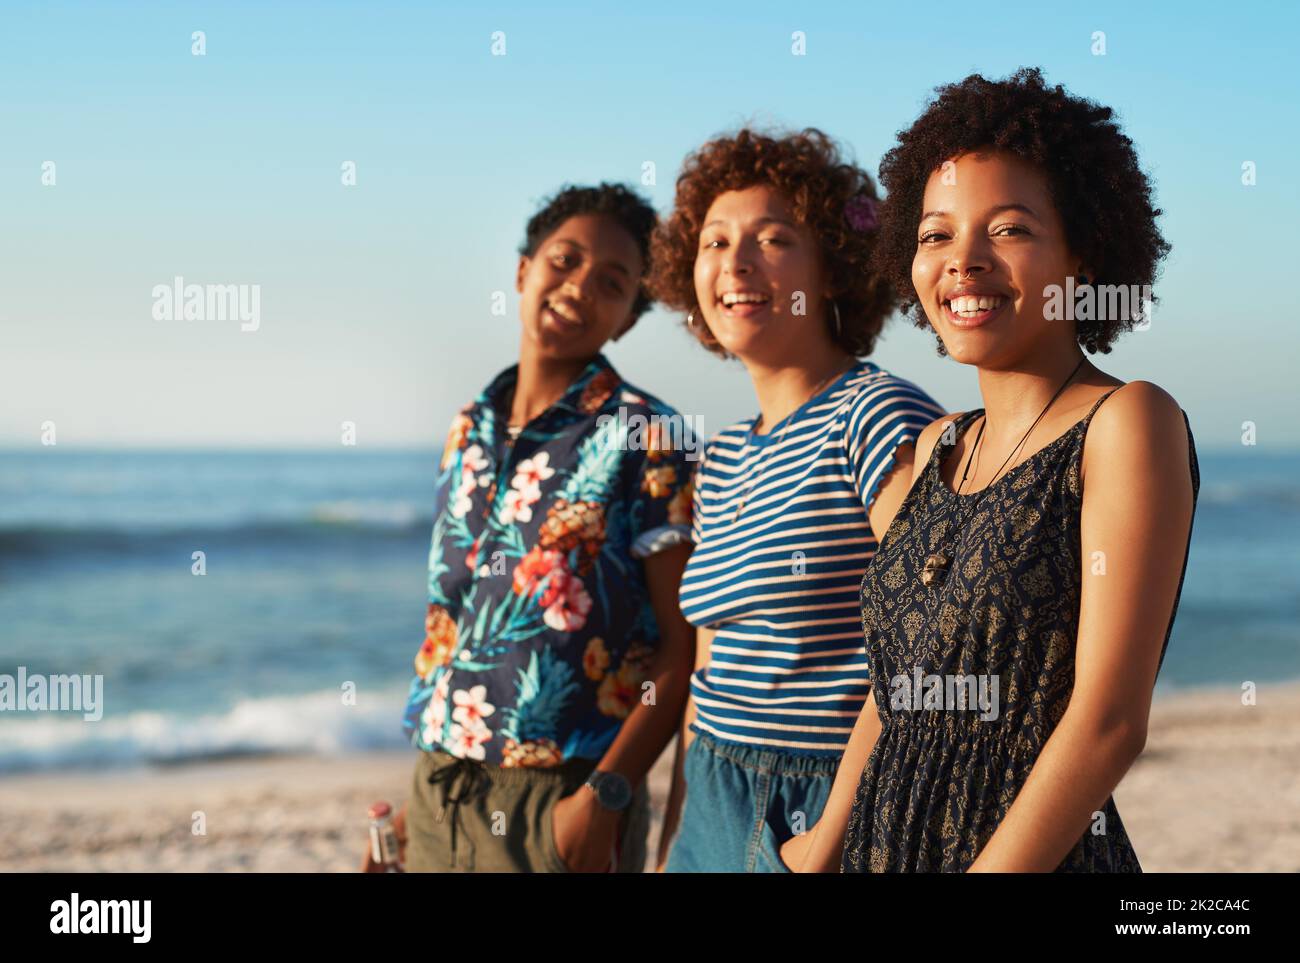 Nous nous faisons sourire les uns les autres. Portrait de trois jeunes femmes attrayantes debout ensemble et posant sur la plage pendant la journée. Banque D'Images